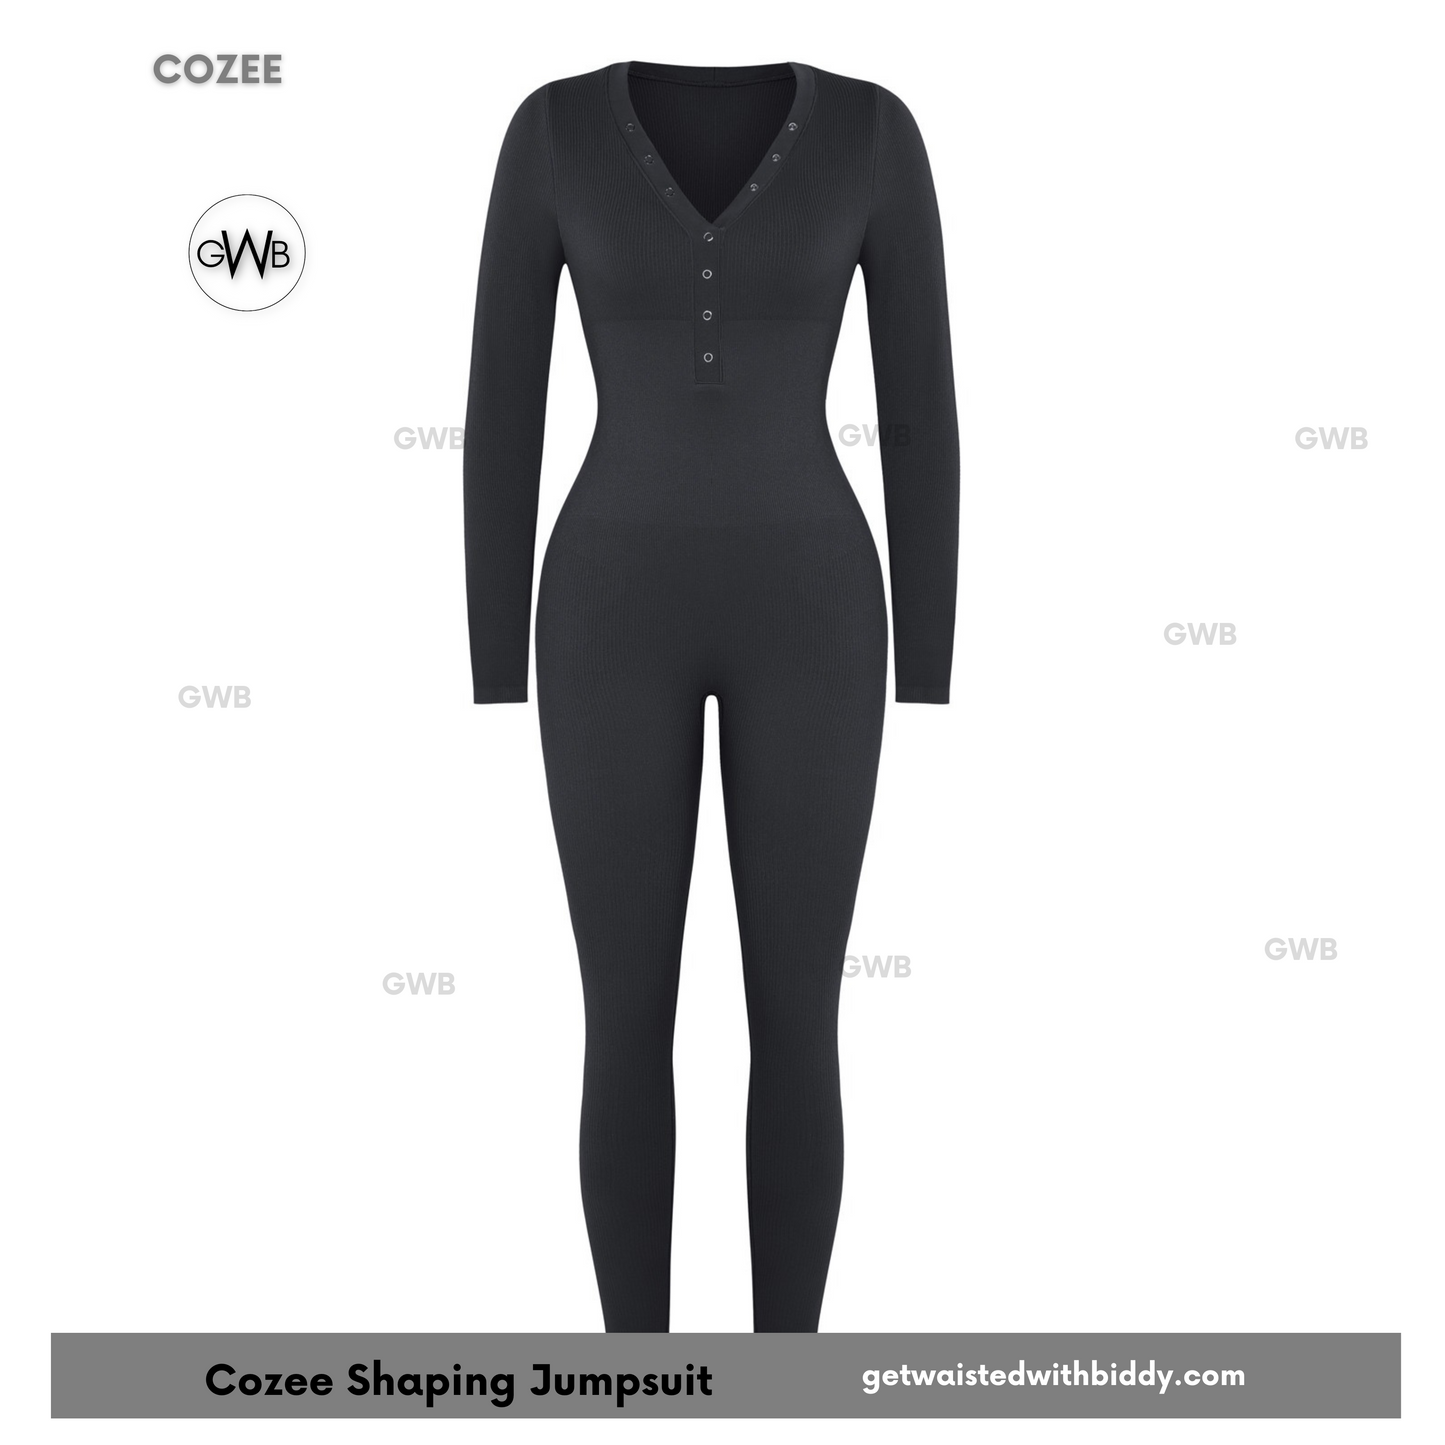 NEW! GWB Cozee Loungewear Jumpsuit Bodysuit Black